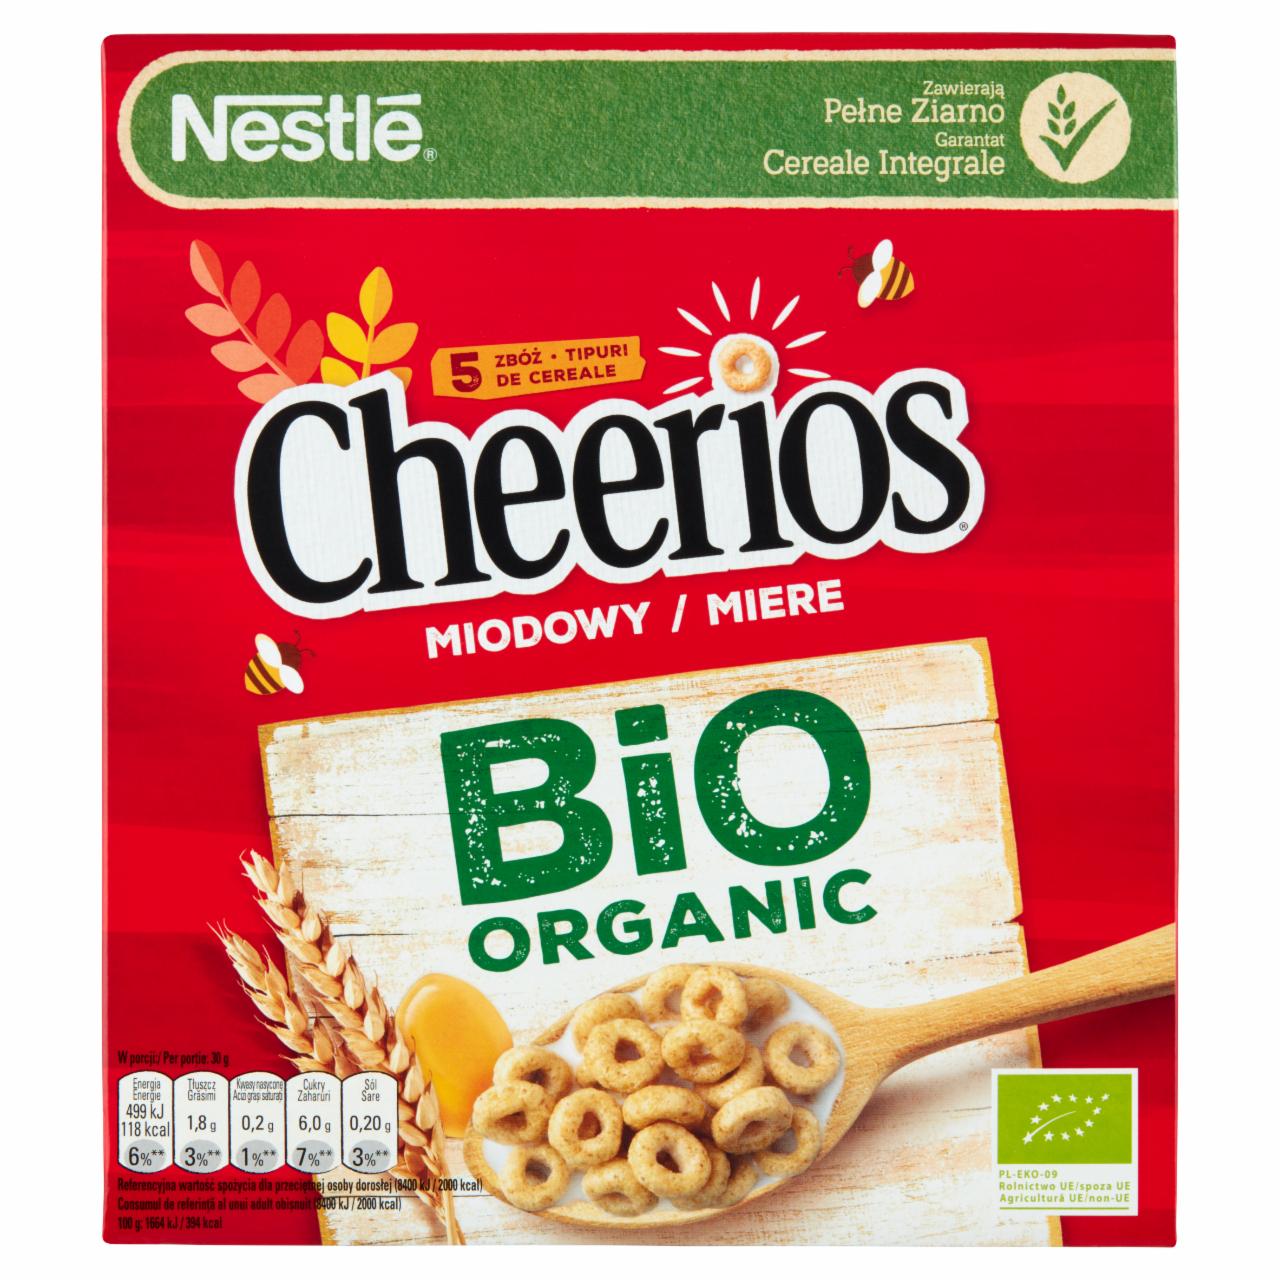 Zdjęcia - Cheerios Miodowy Bio Organic Płatki śniadaniowe Nestlé